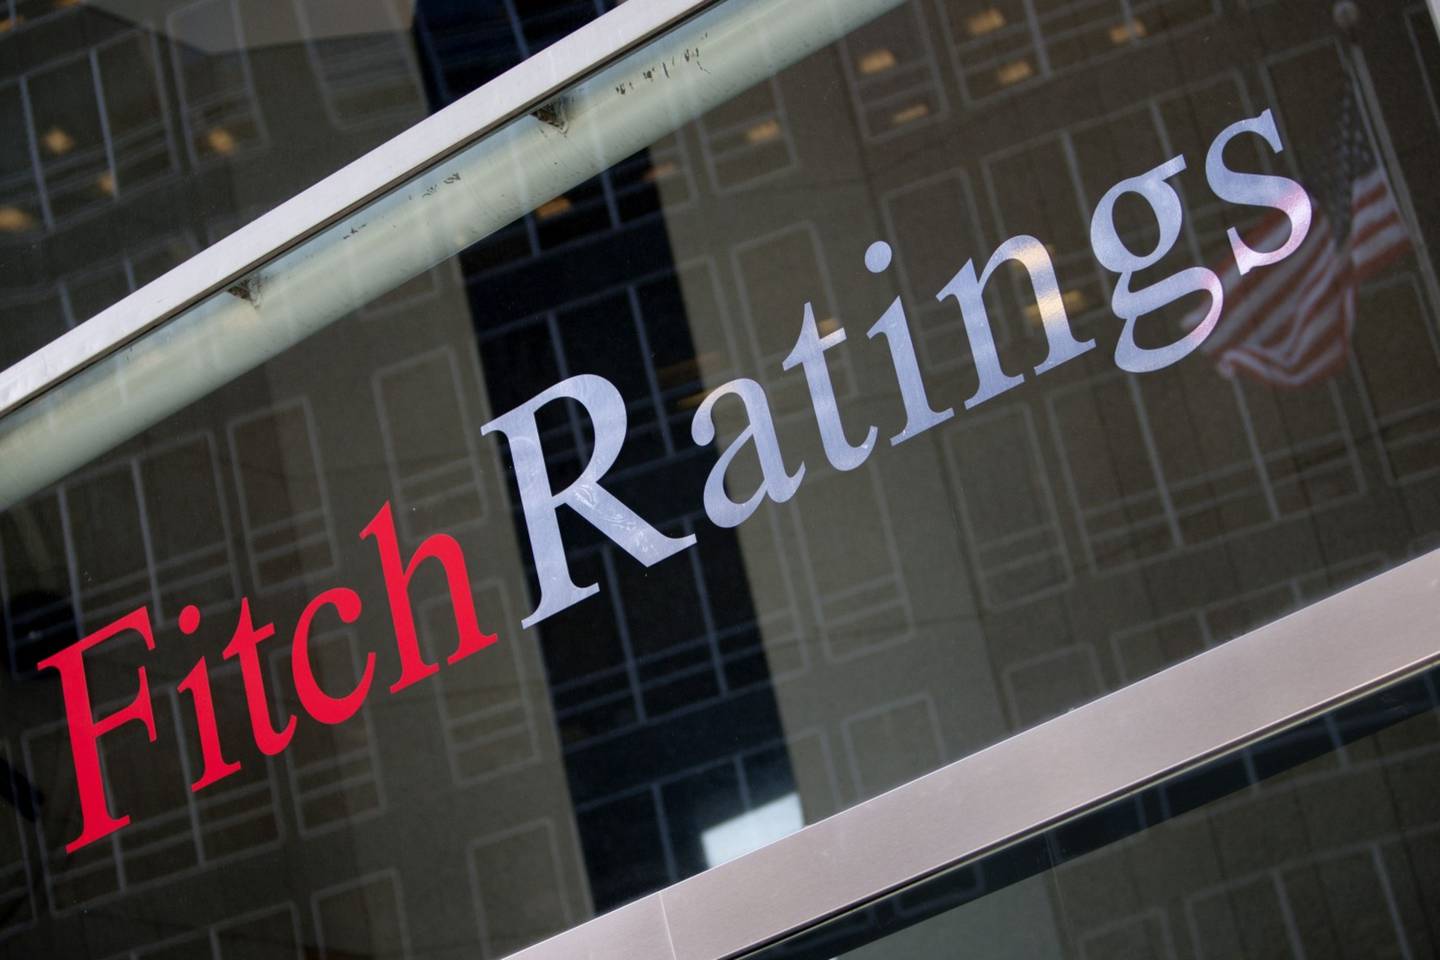 Fitch proporciona a los mercados crediticios del mundo opiniones, investigaciones y datos crediticios prospectivos e independientes. También ofrece soluciones de gestión de riesgos empresariales.